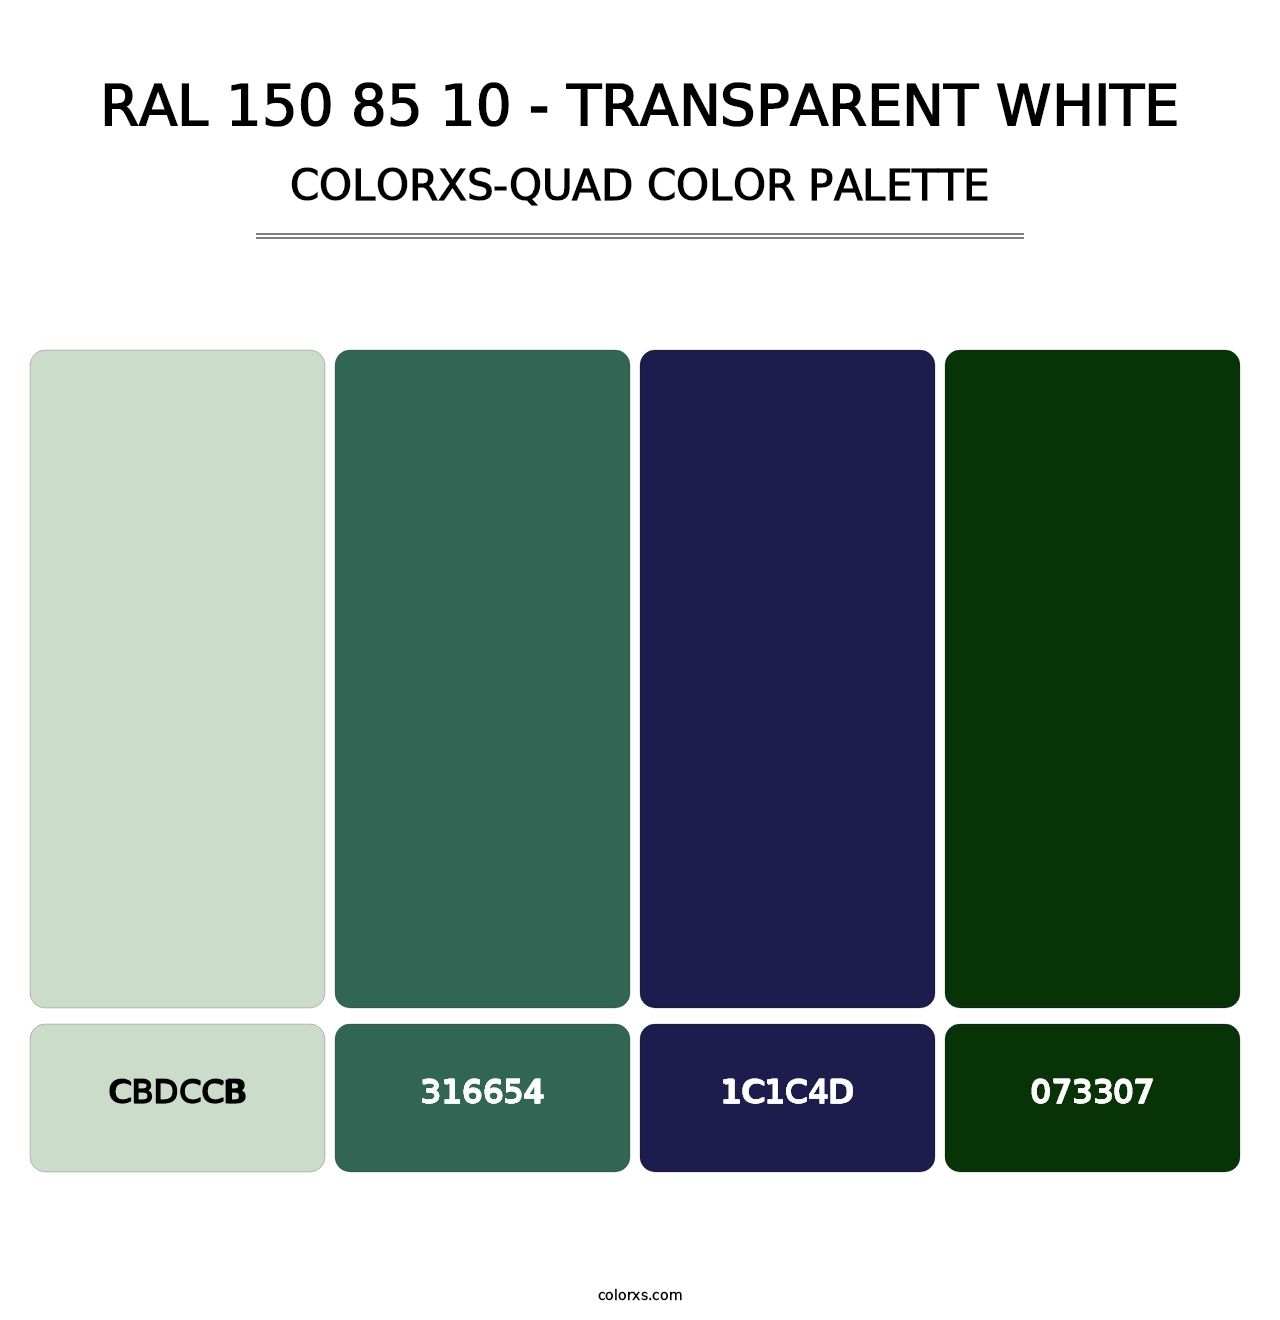 RAL 150 85 10 - Transparent White - Colorxs Quad Palette